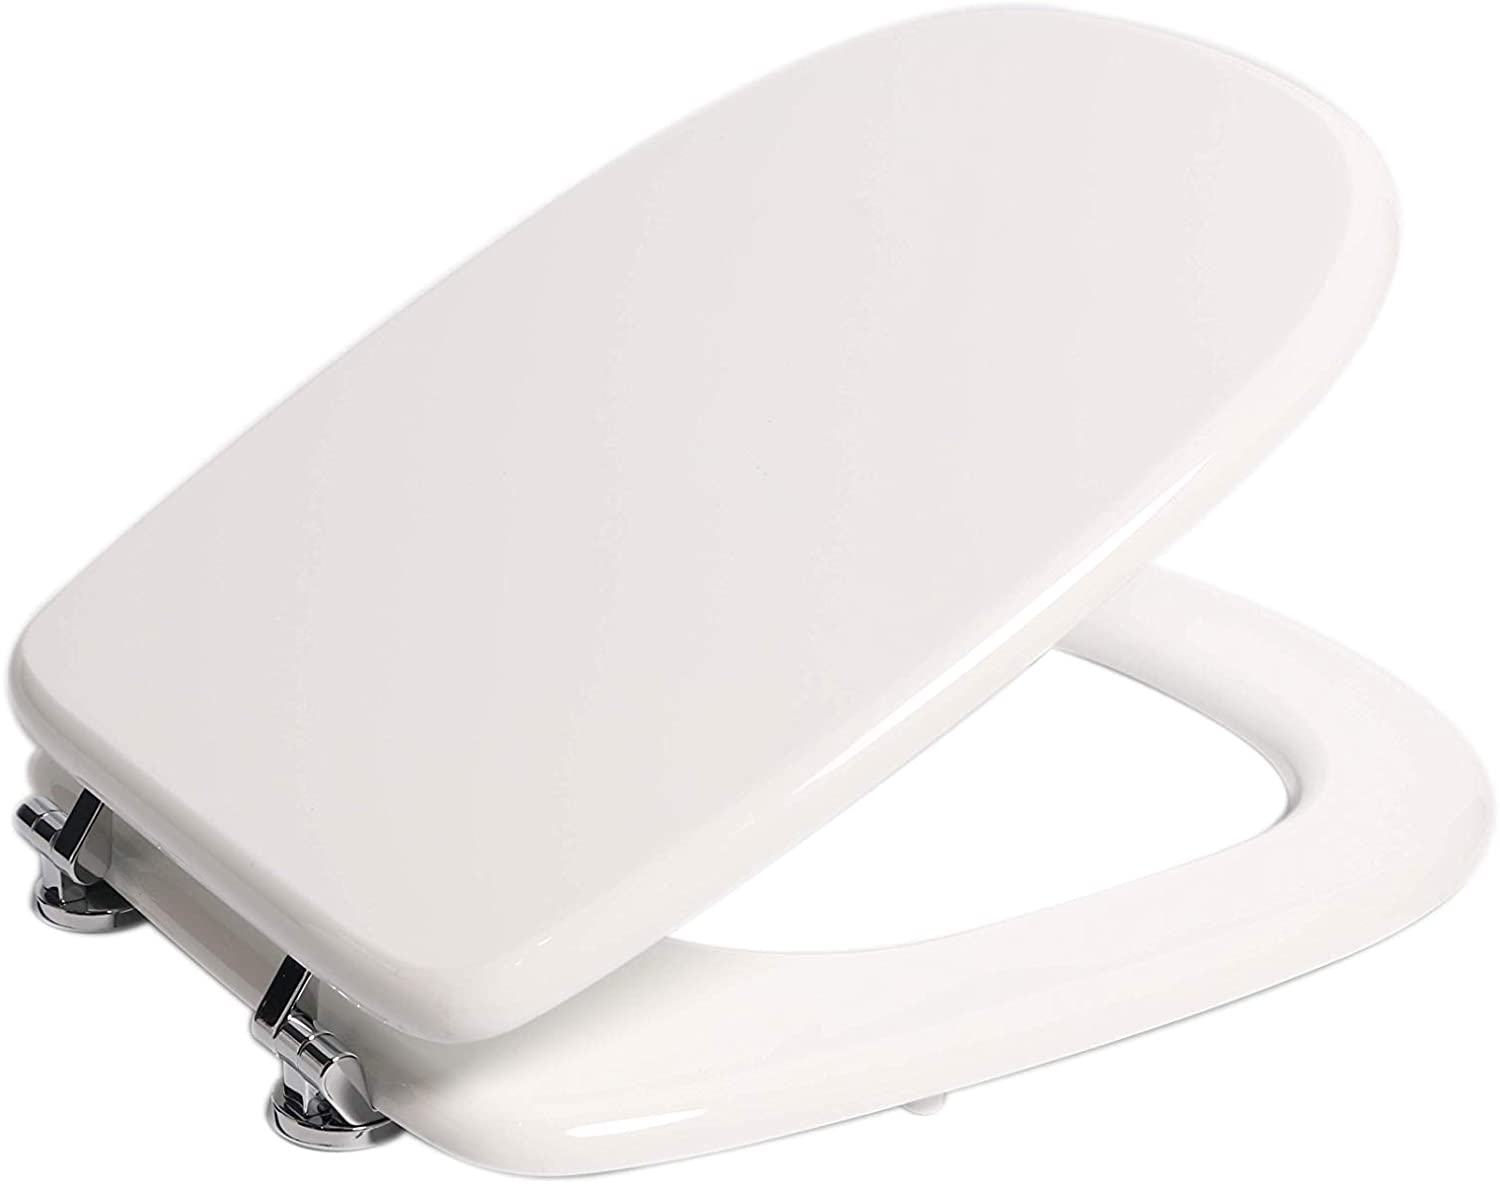 Sedile bagno WC rettangolare in resina colata poliestere bianco con cerniera in ottone universale Modello Tesi